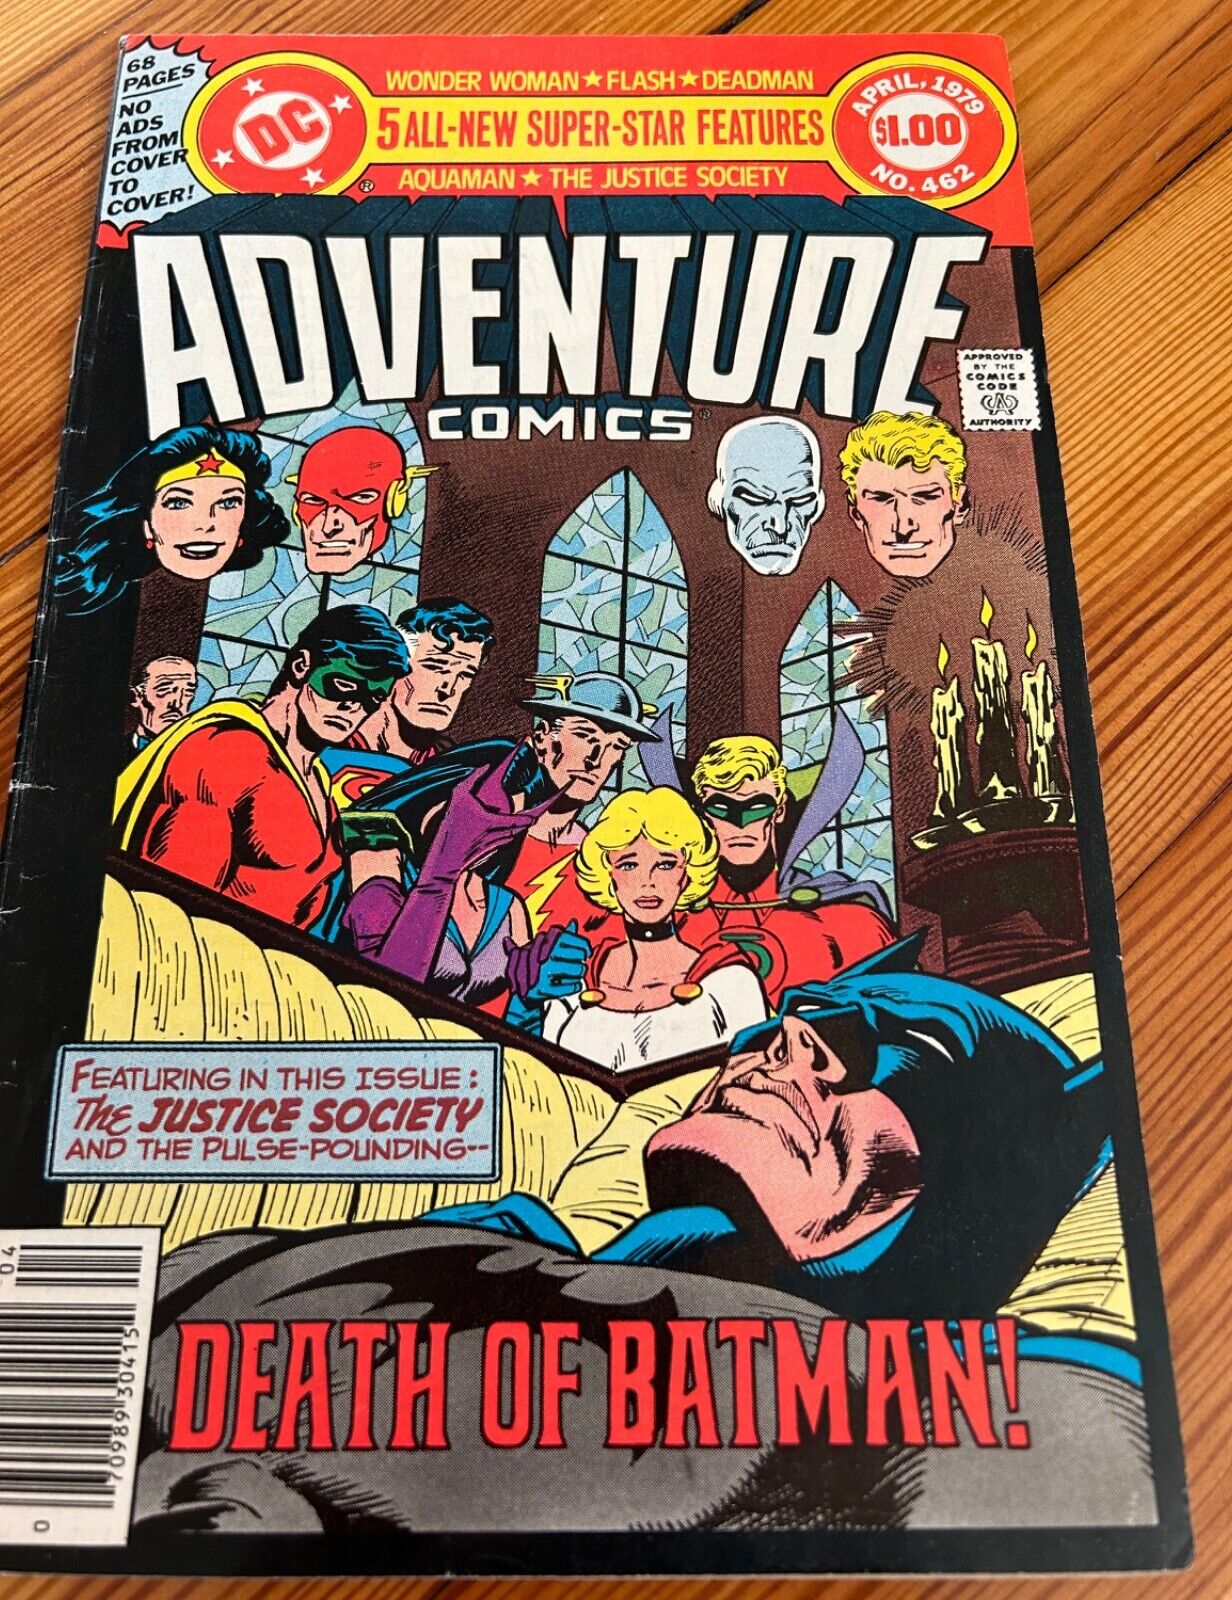 Adventure Comics Issue 462 DEATH OF BATMAN DC Comics April 1979 JUSTICE SOCIETY